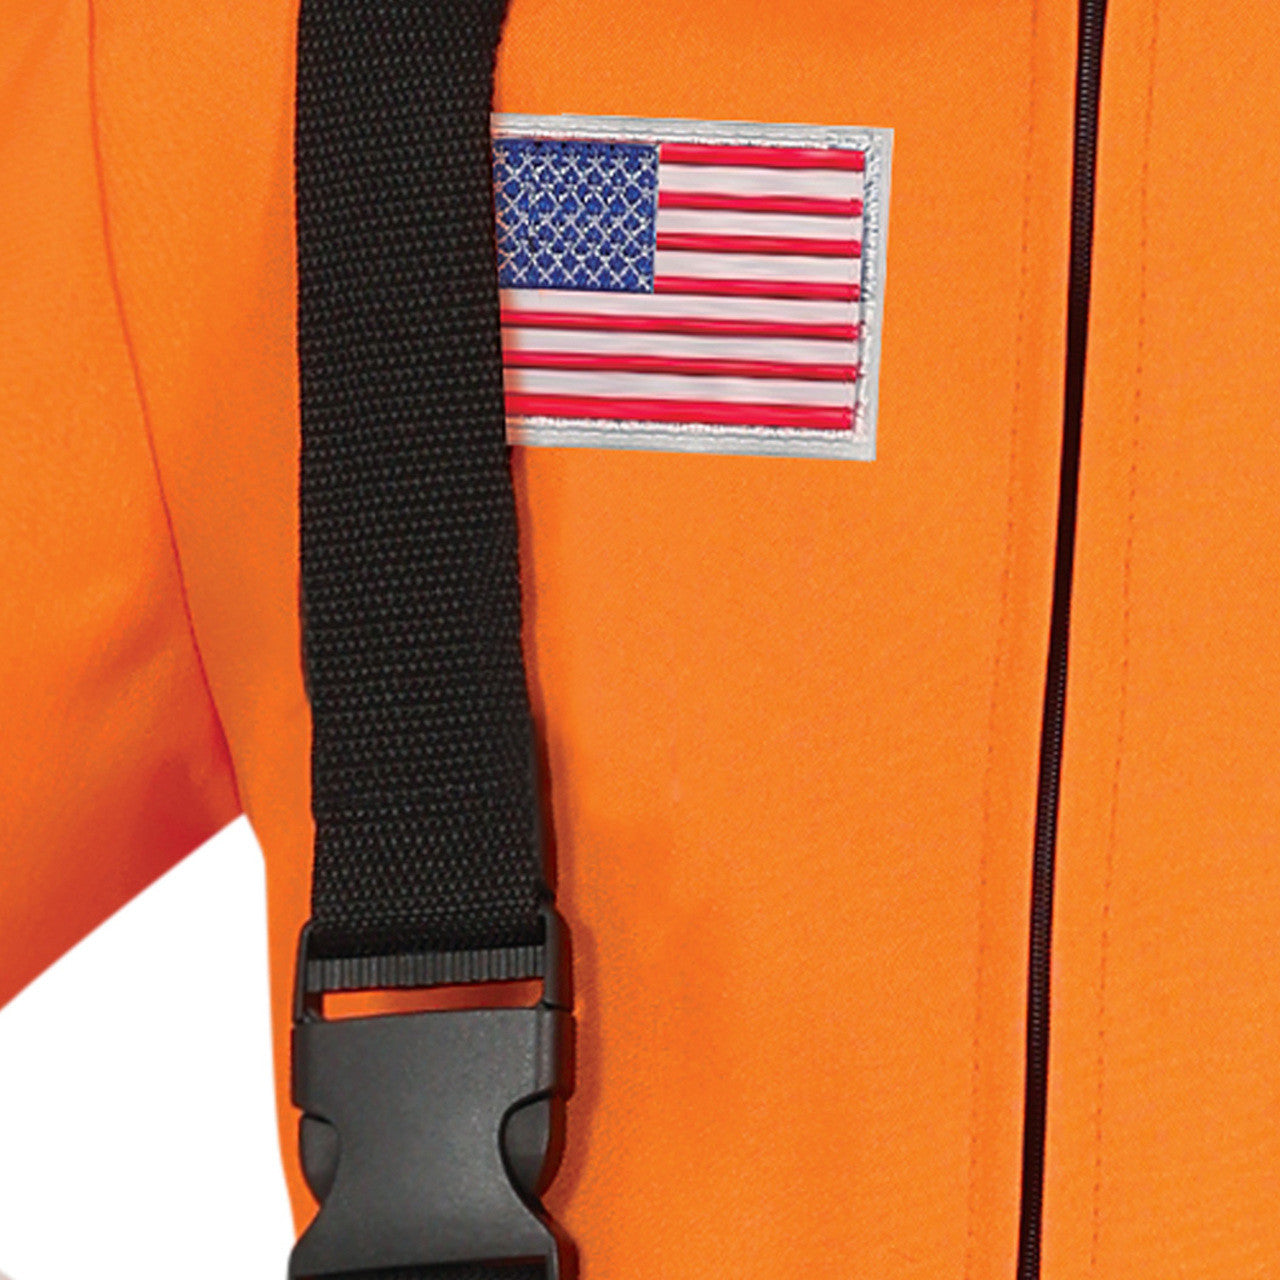 Astronaut Orange Kostüm für Kinder